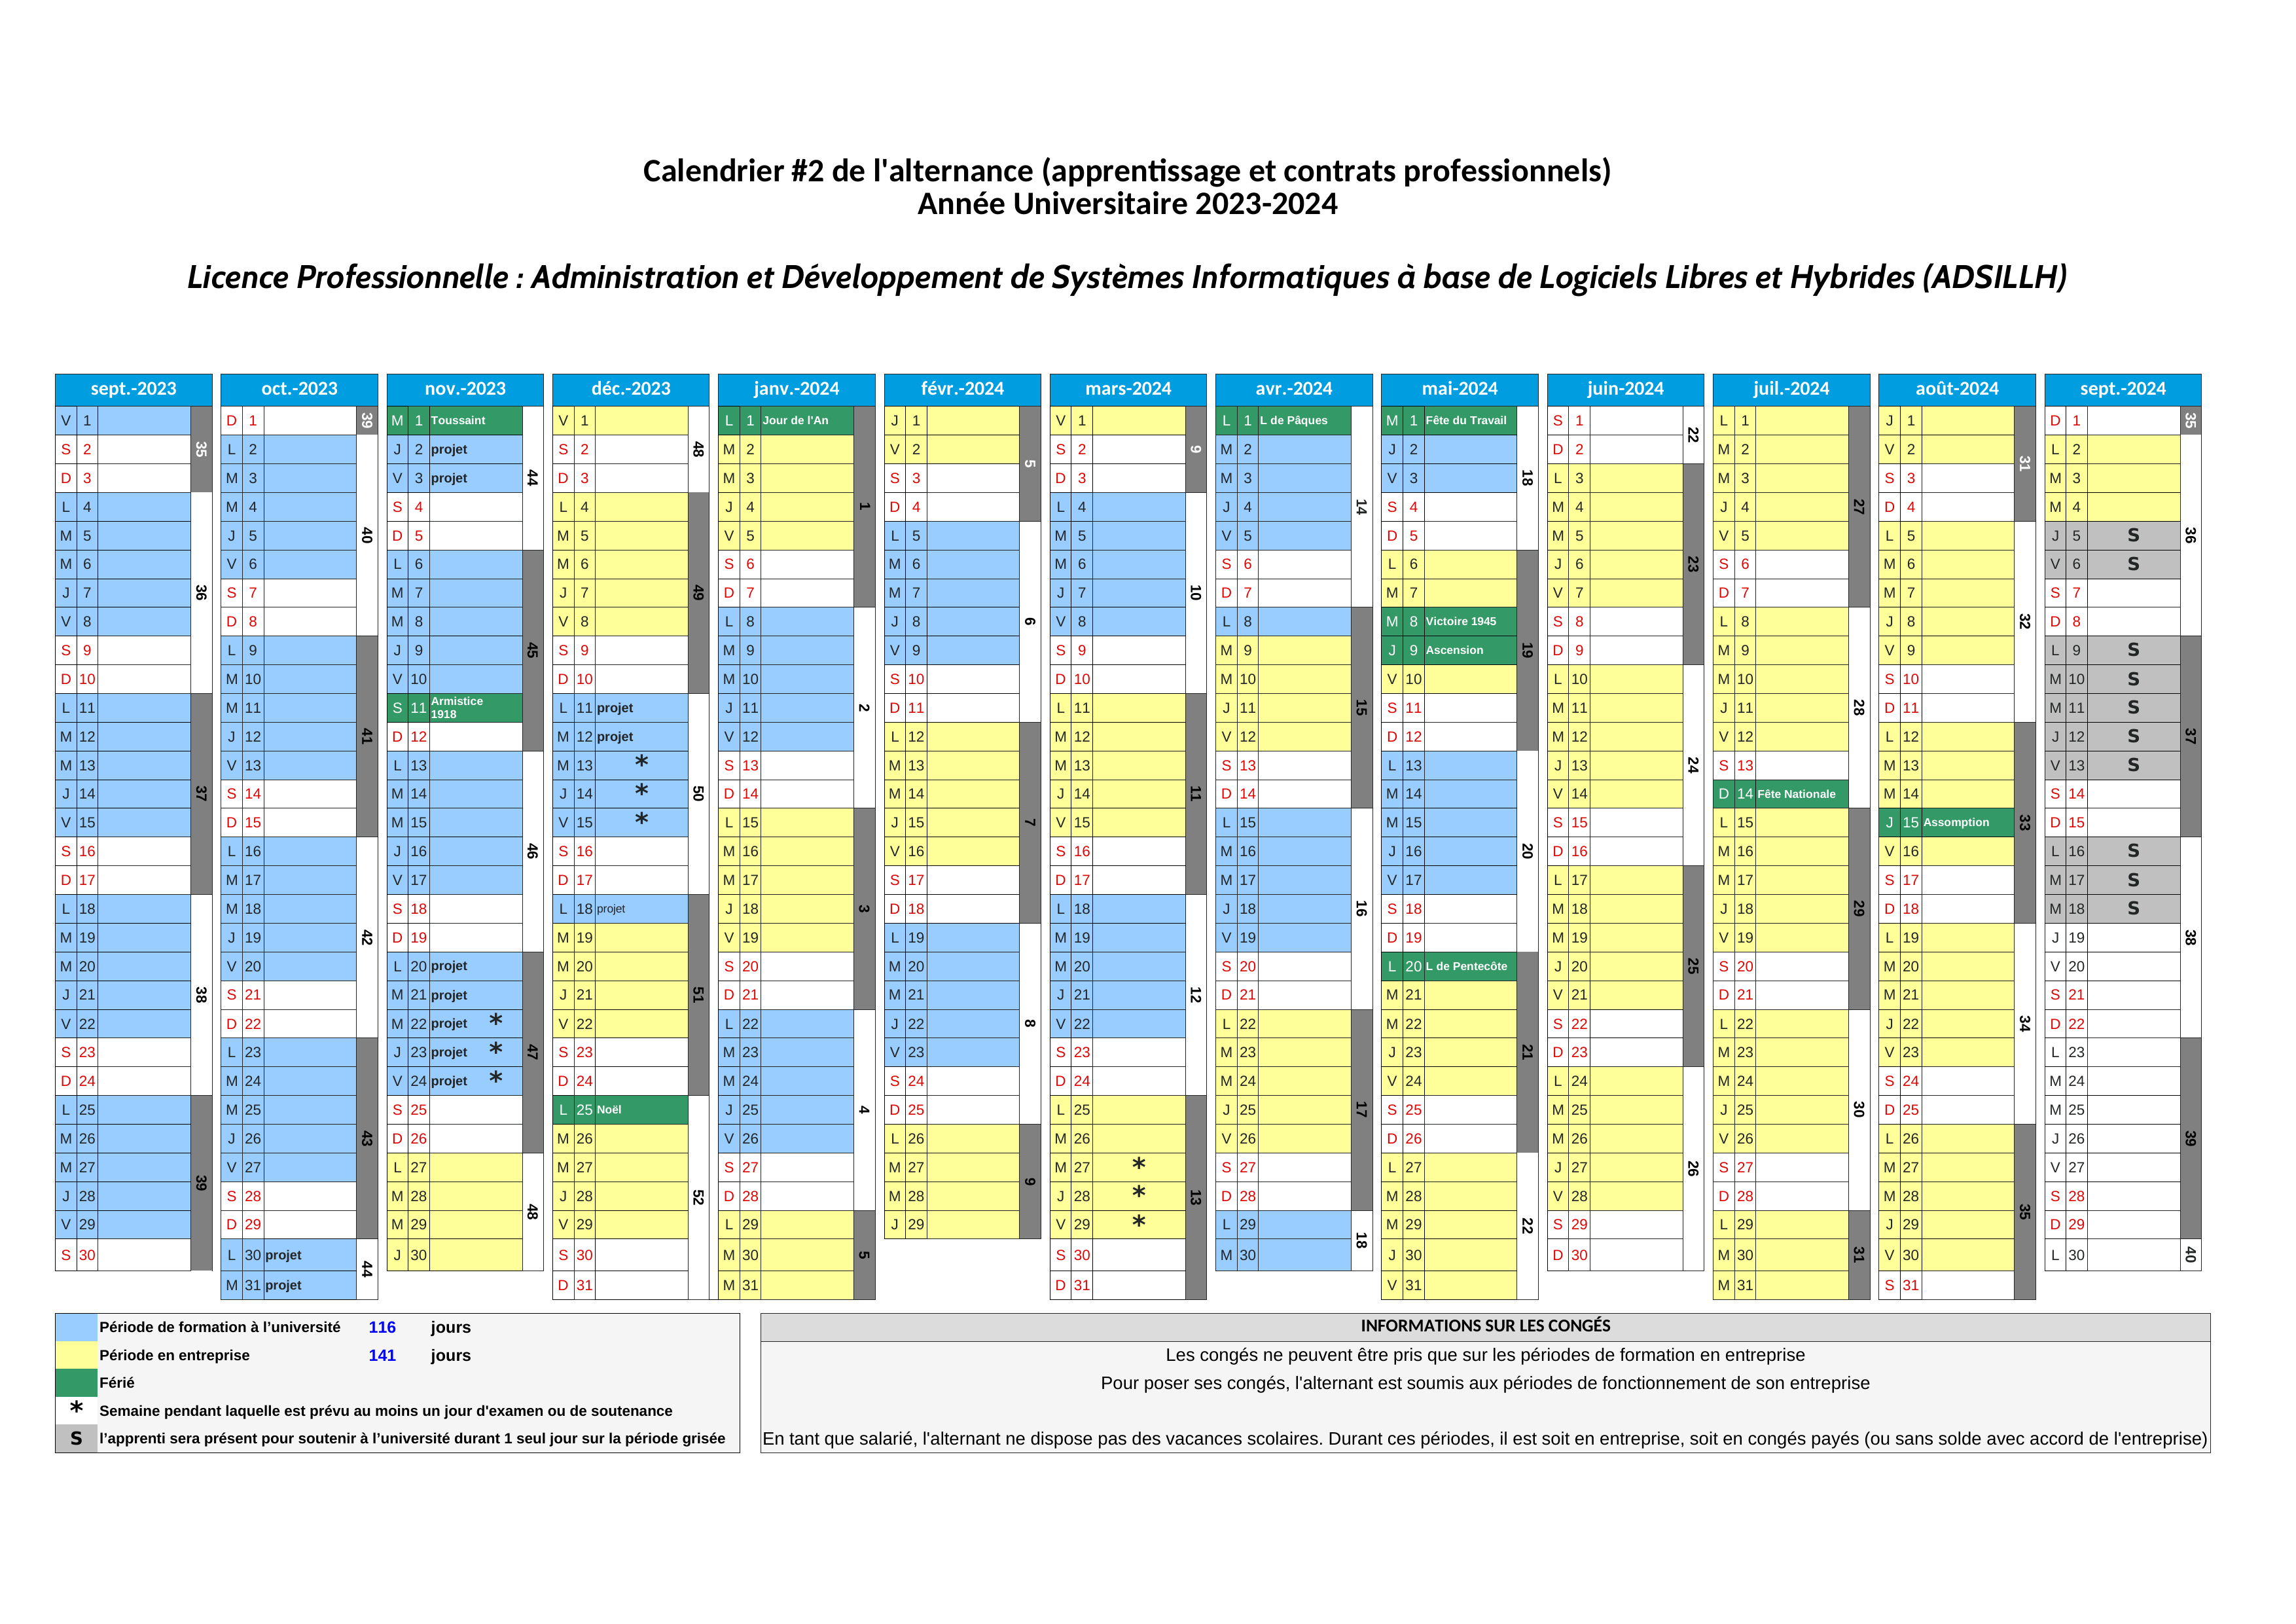 Calendrier prévisionnel (2023-2024) [alternance 2]